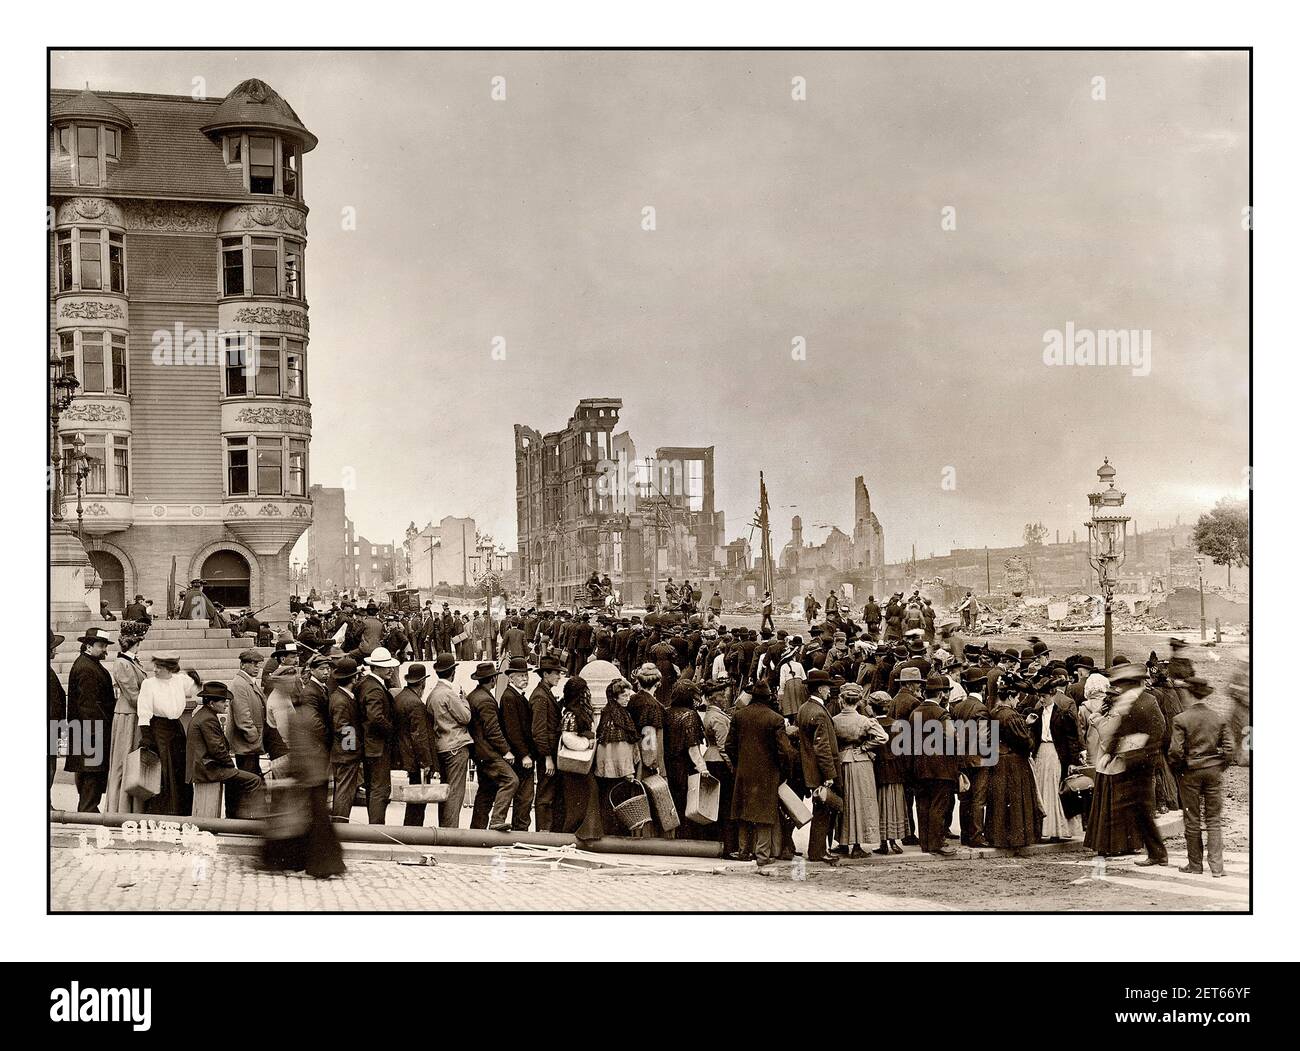 SAN FRANCISCO 1906 personnes TREMBLEMENT DE TERRE dans la file d'attente de pain de nourriture Après le tremblement de terre de 1906 San Francisco Californie États-Unis Banque D'Images